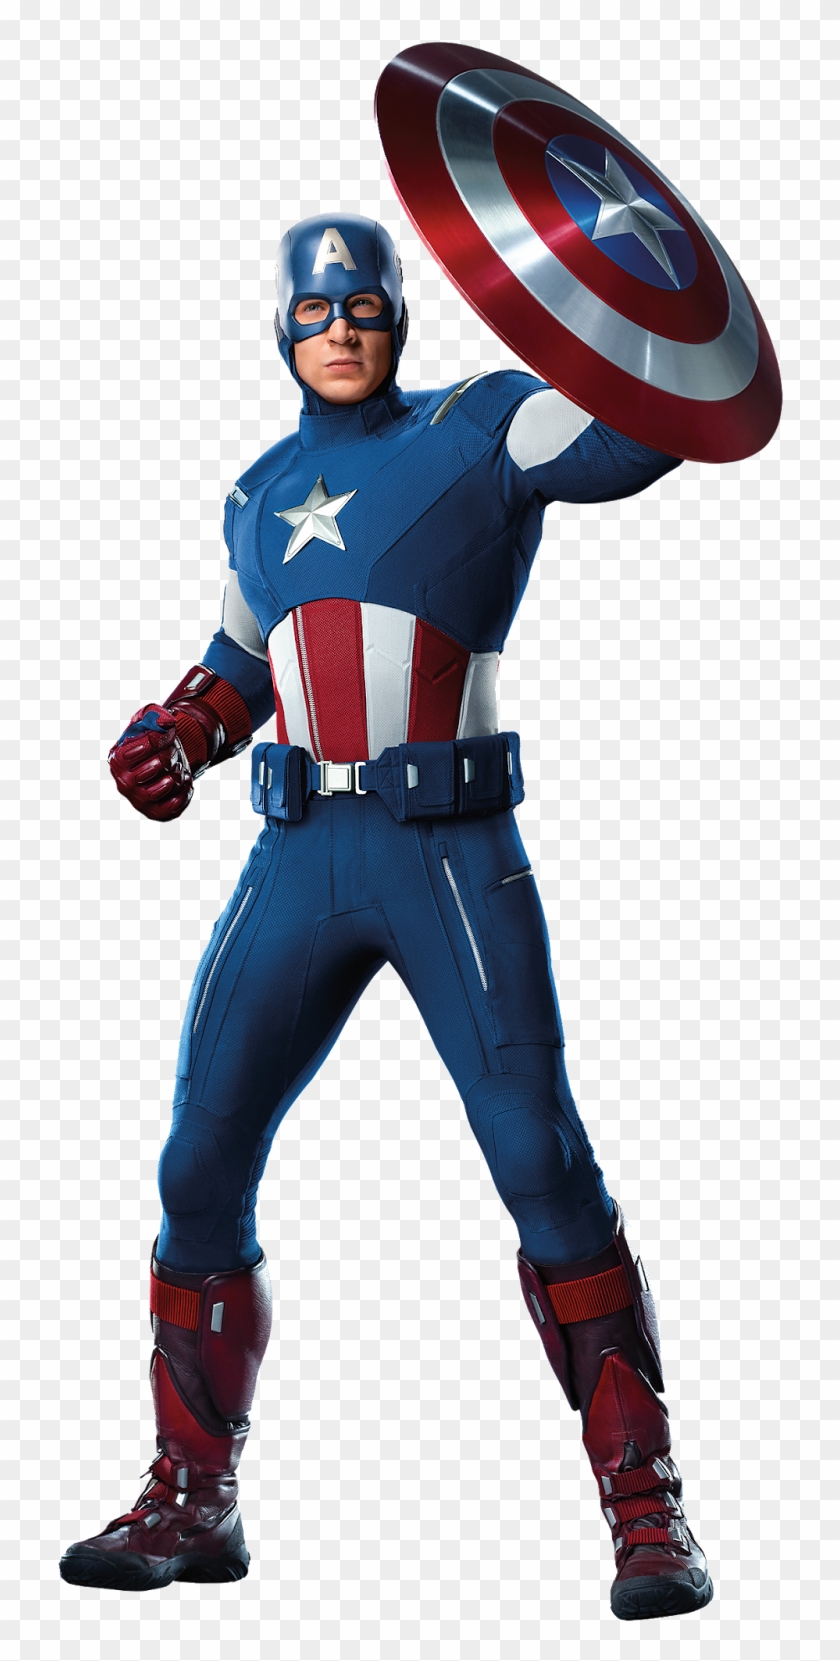 Captainamerica-avengers - Captain America Avengers Png #1304535